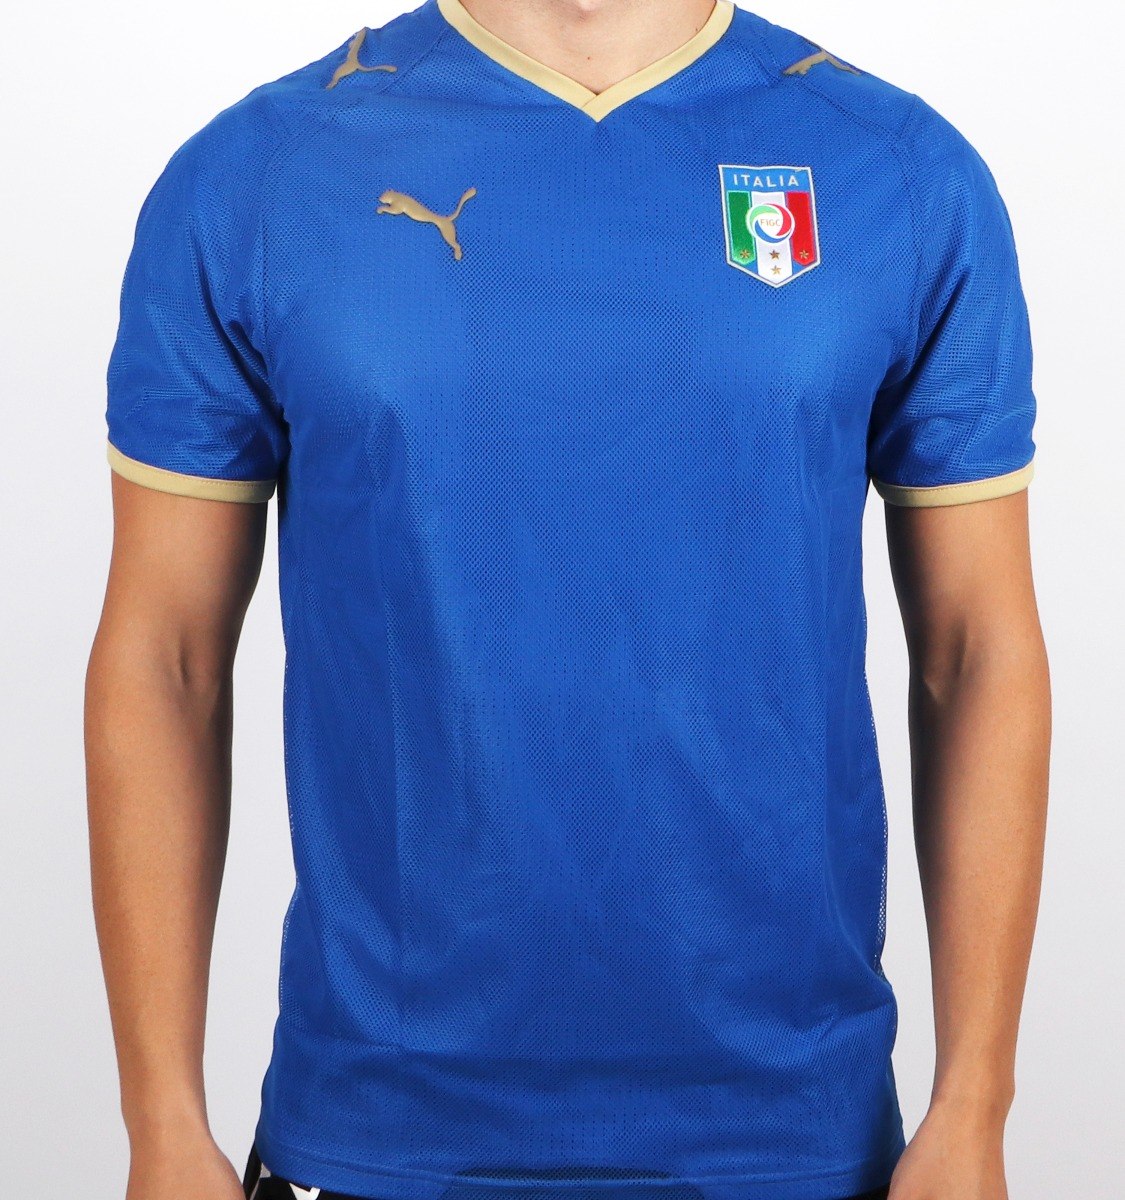 Camisa Seleção Da Itália Azul Puma - Original - R$ 69,90 em Mercado Livre